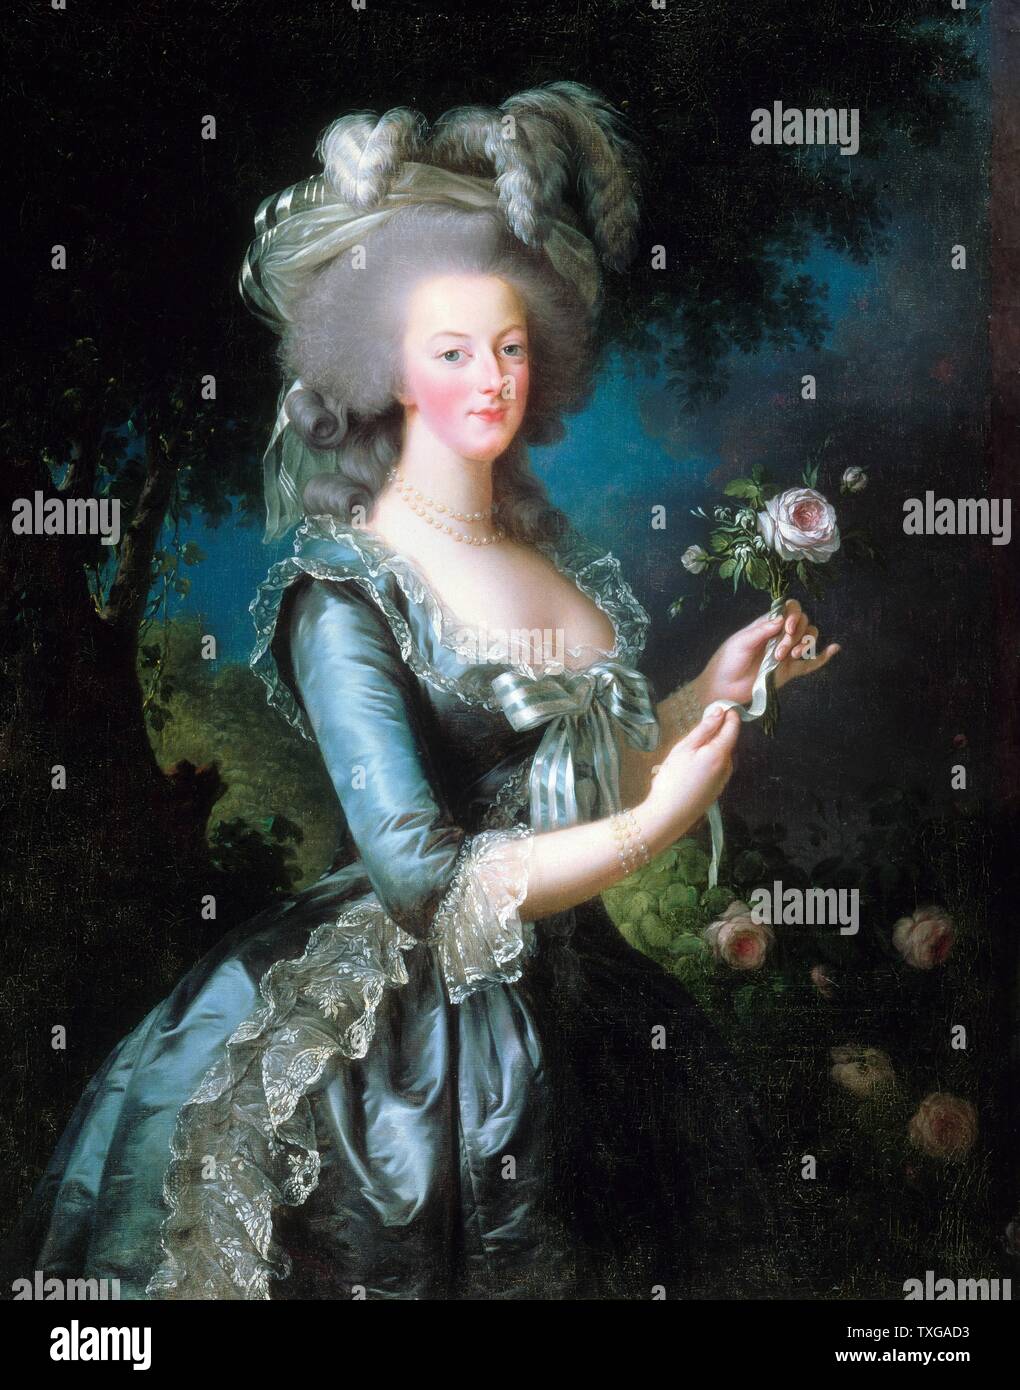 Elisabeth Vigée Le Brun französische Schule Marie-Antoinette, Königin von Frankreich mit einer Rose 1783 Öl auf Leinwand (113 x 87 cm) Versailles Château de Versailles et de Trianon Stockfoto